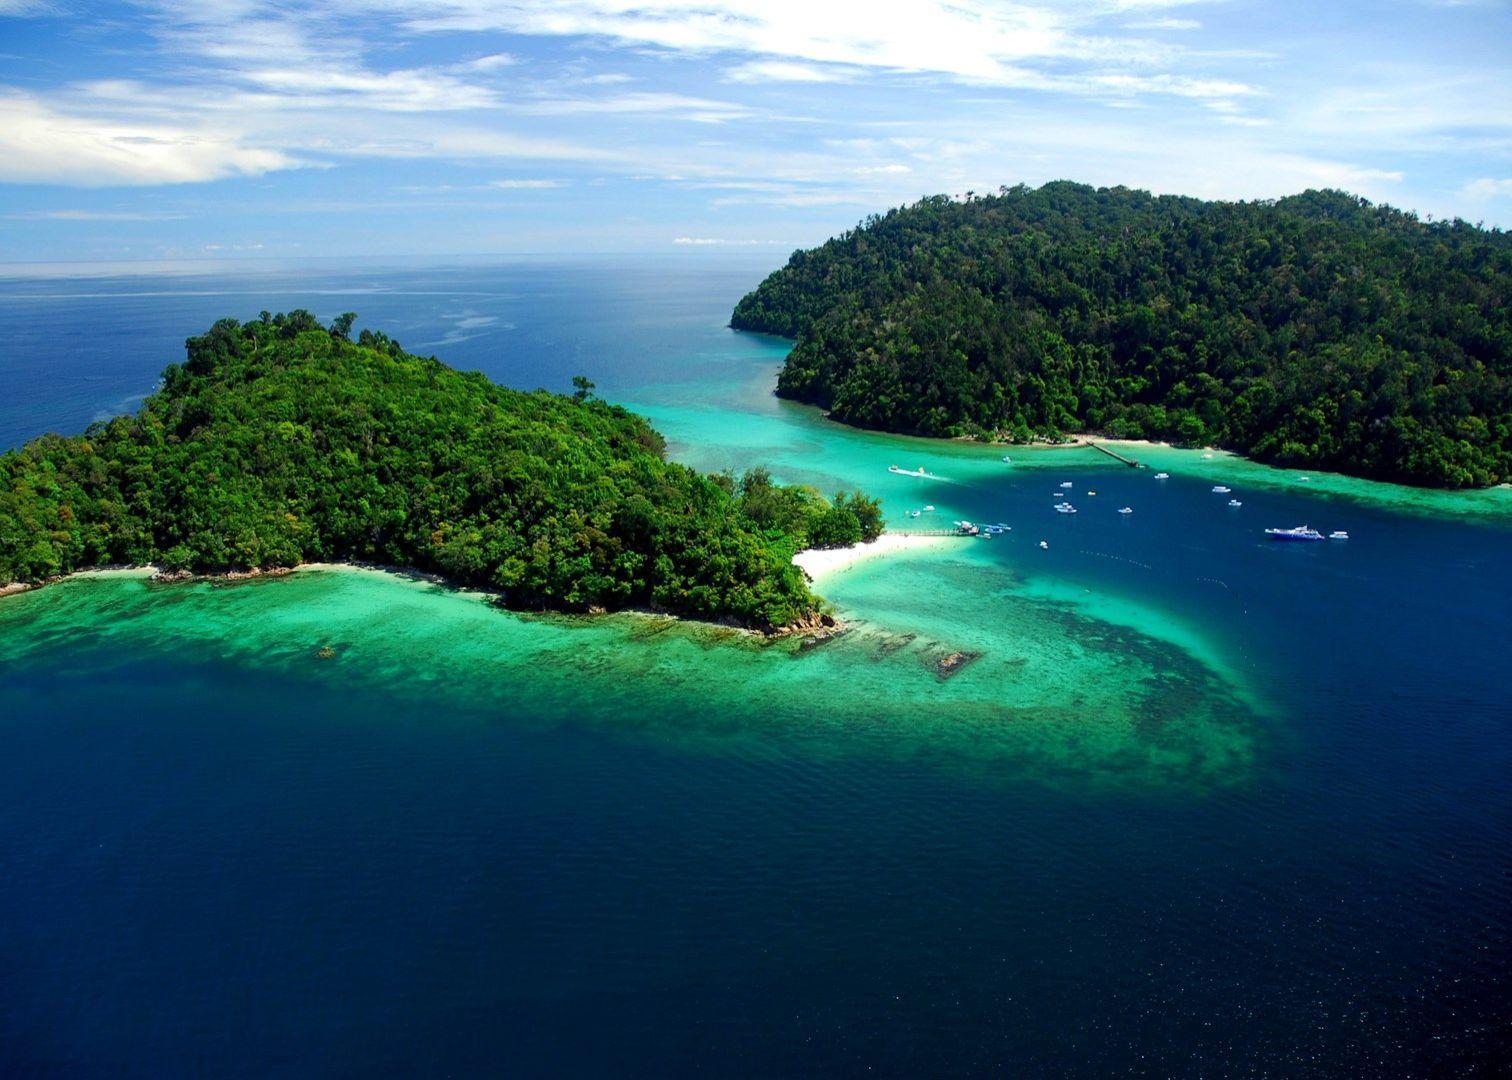 Borneo (Indonesia)